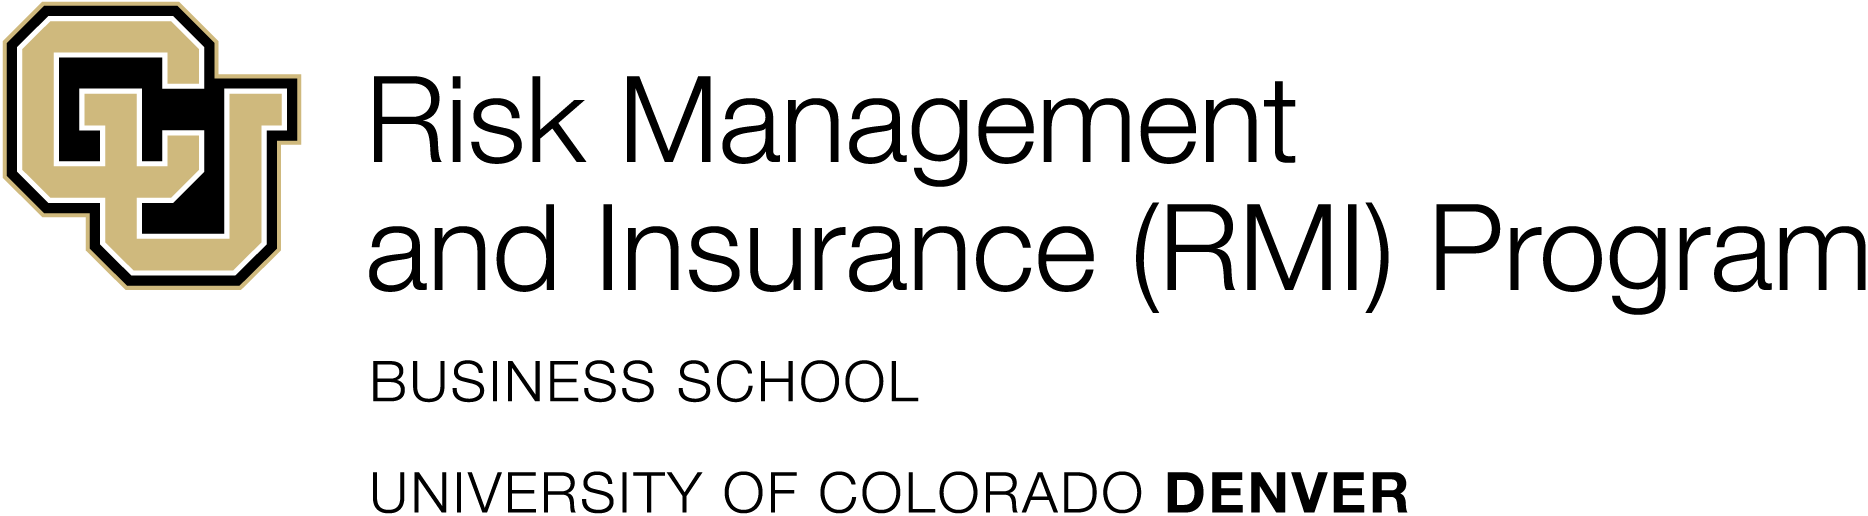 RMI-logo